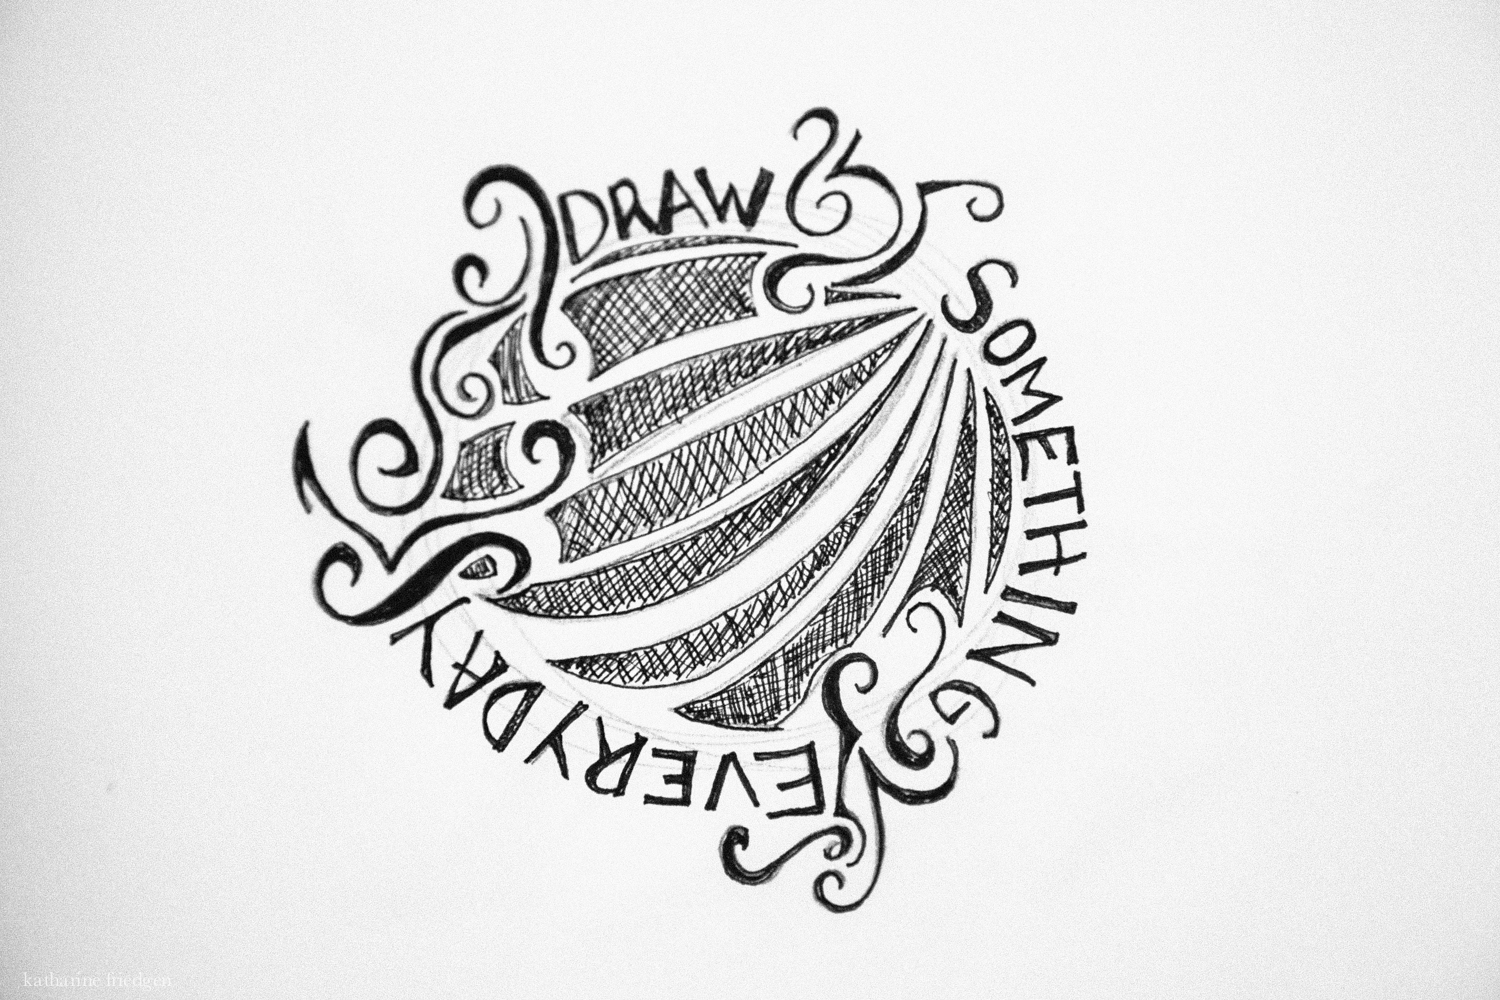 drawing-a-day-friedgen-web-8928